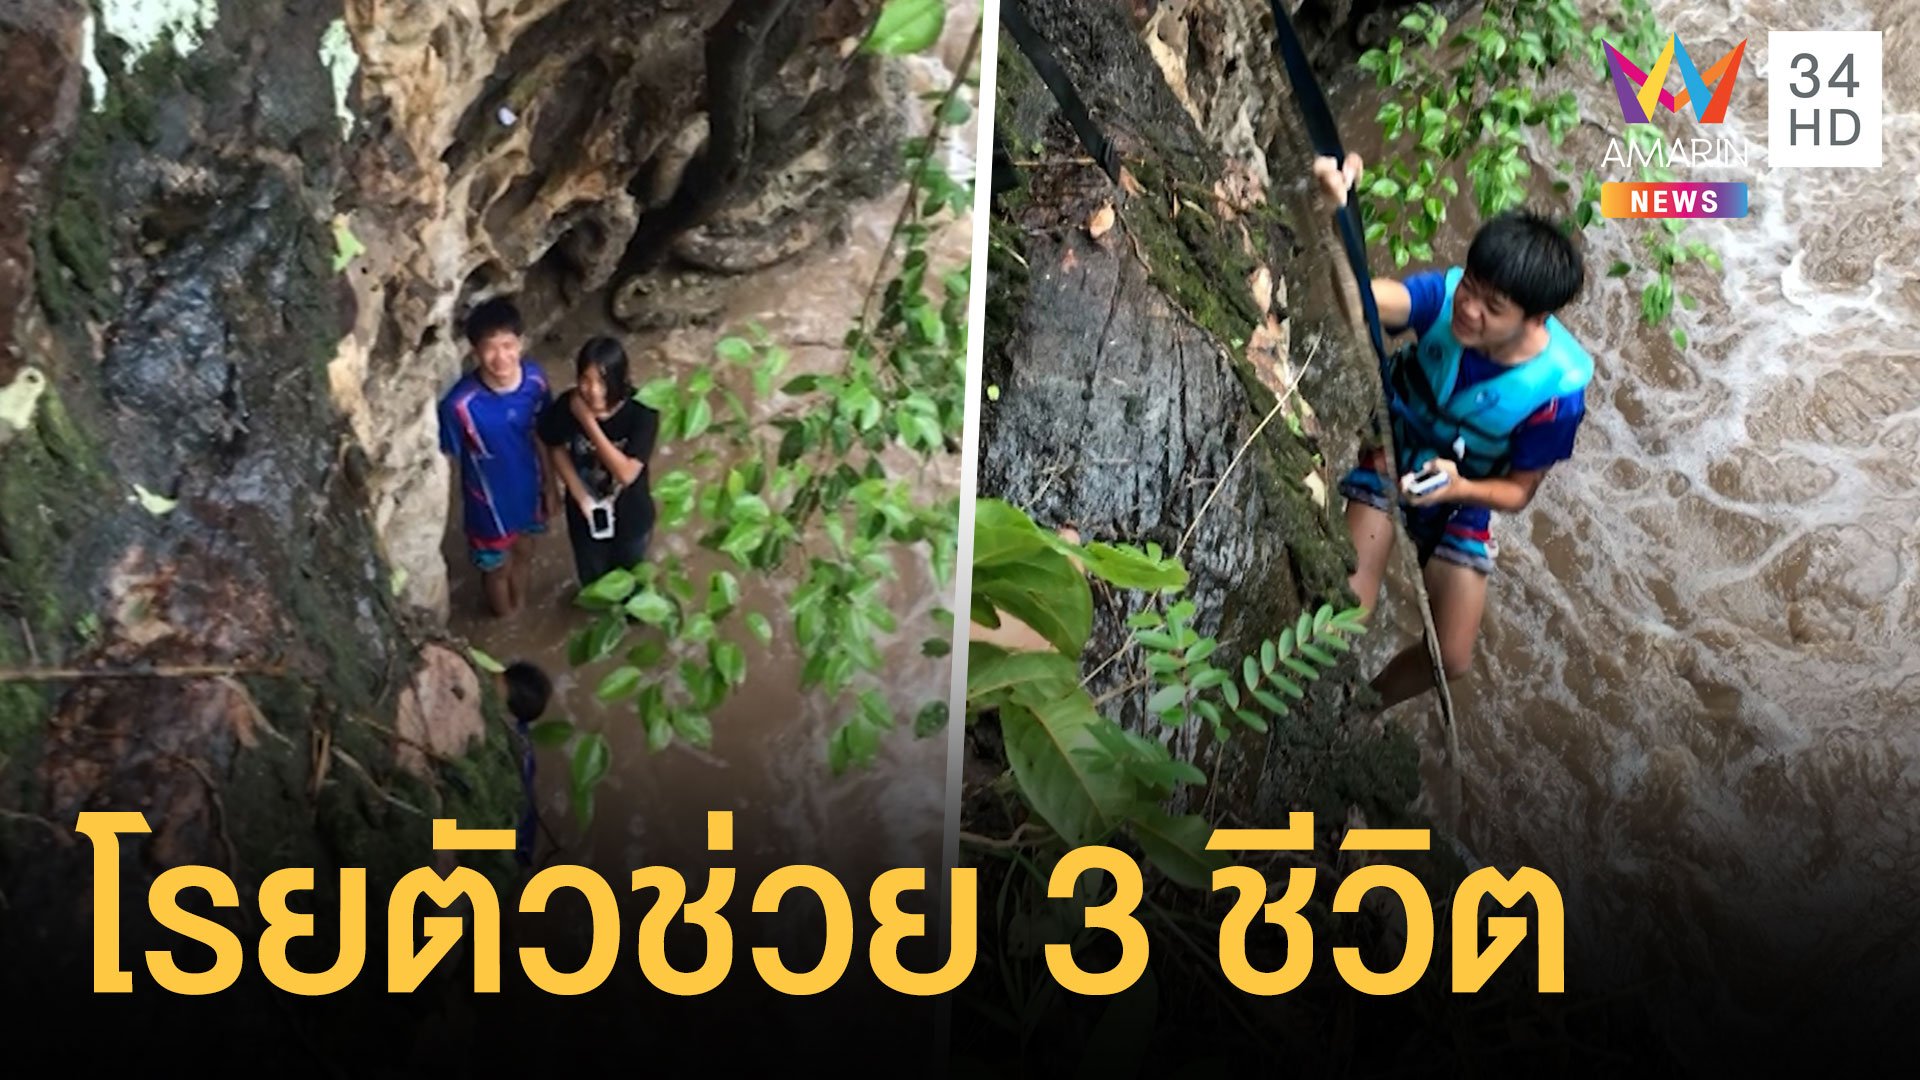 เด็ก 3 คนเล่นน้ำตกน้ำป่าทะลัก กู้ภัยโรยตัวช่วยชีวิต | ข่าวอรุณอมรินทร์ | 15 ก.ย. 64 | AMARIN TVHD34